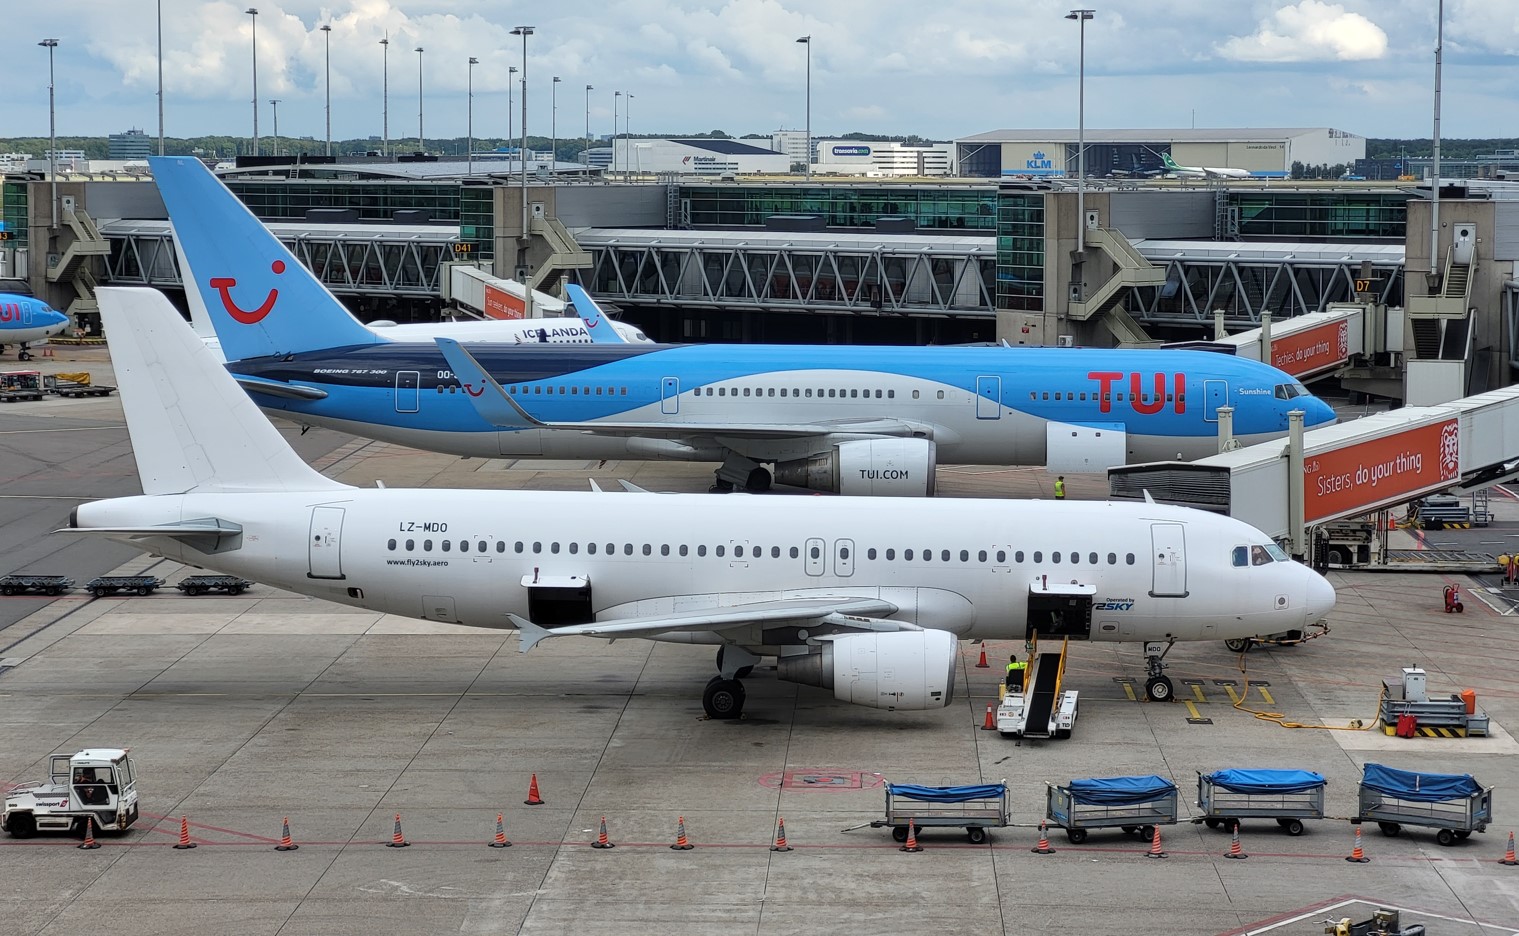 Luchtvaart Slager genoeg TUI komt bagage thuis ophalen | Luchtvaartnieuws